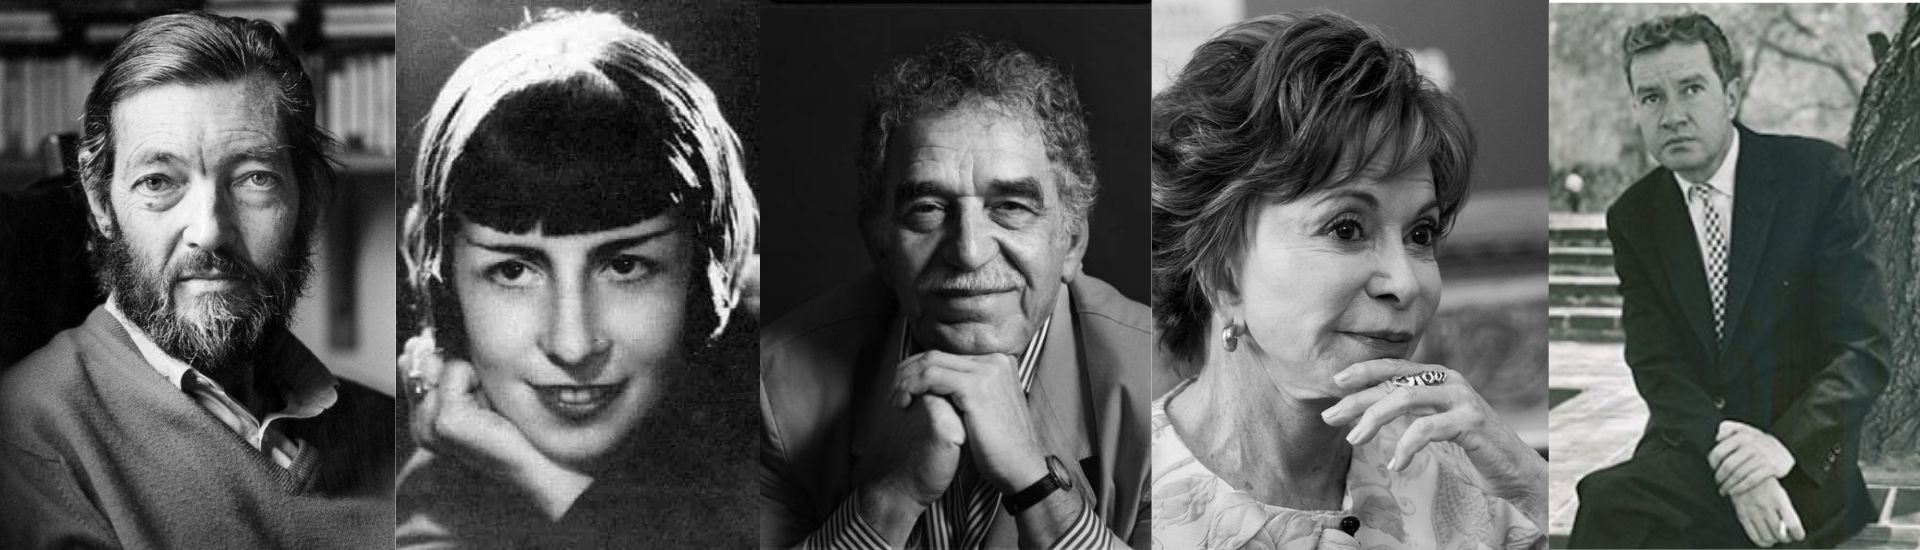 En la imagen se puede apreciar 5 fotos de los escritores y escritoras latinoamericanos, todas en un primer plano y en blanco y negro.